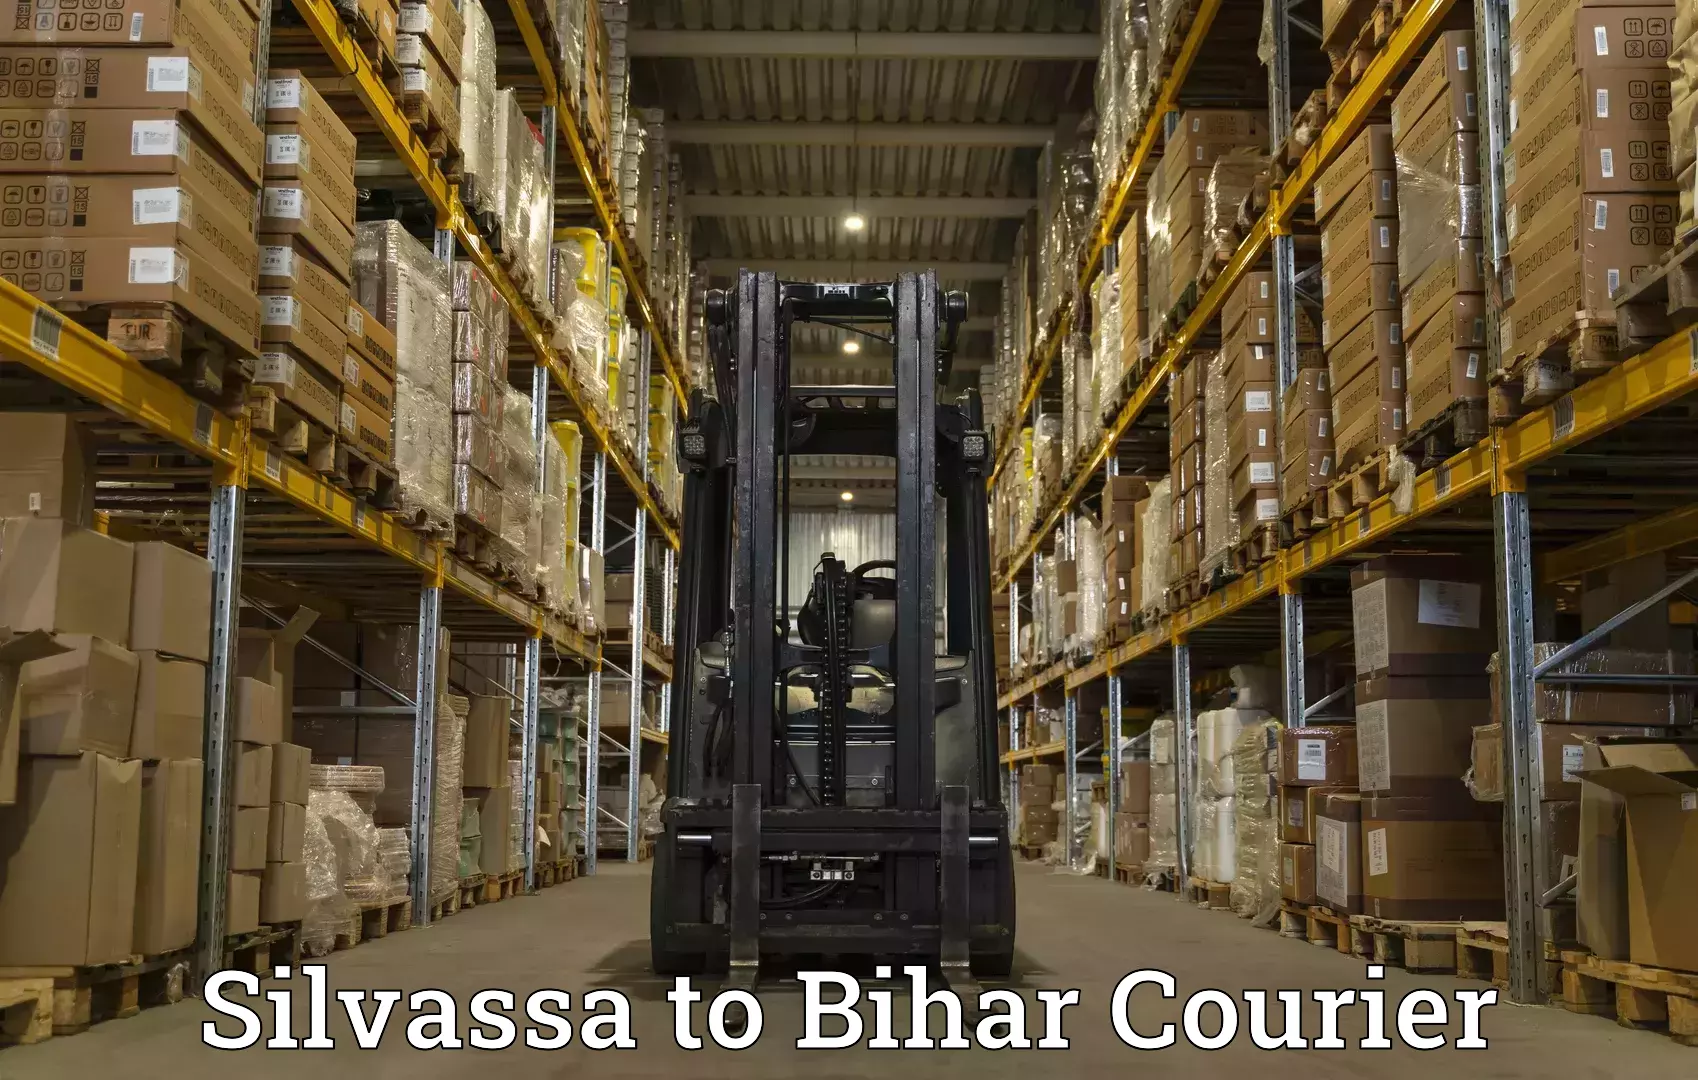 Digital courier platforms Silvassa to Bhorey